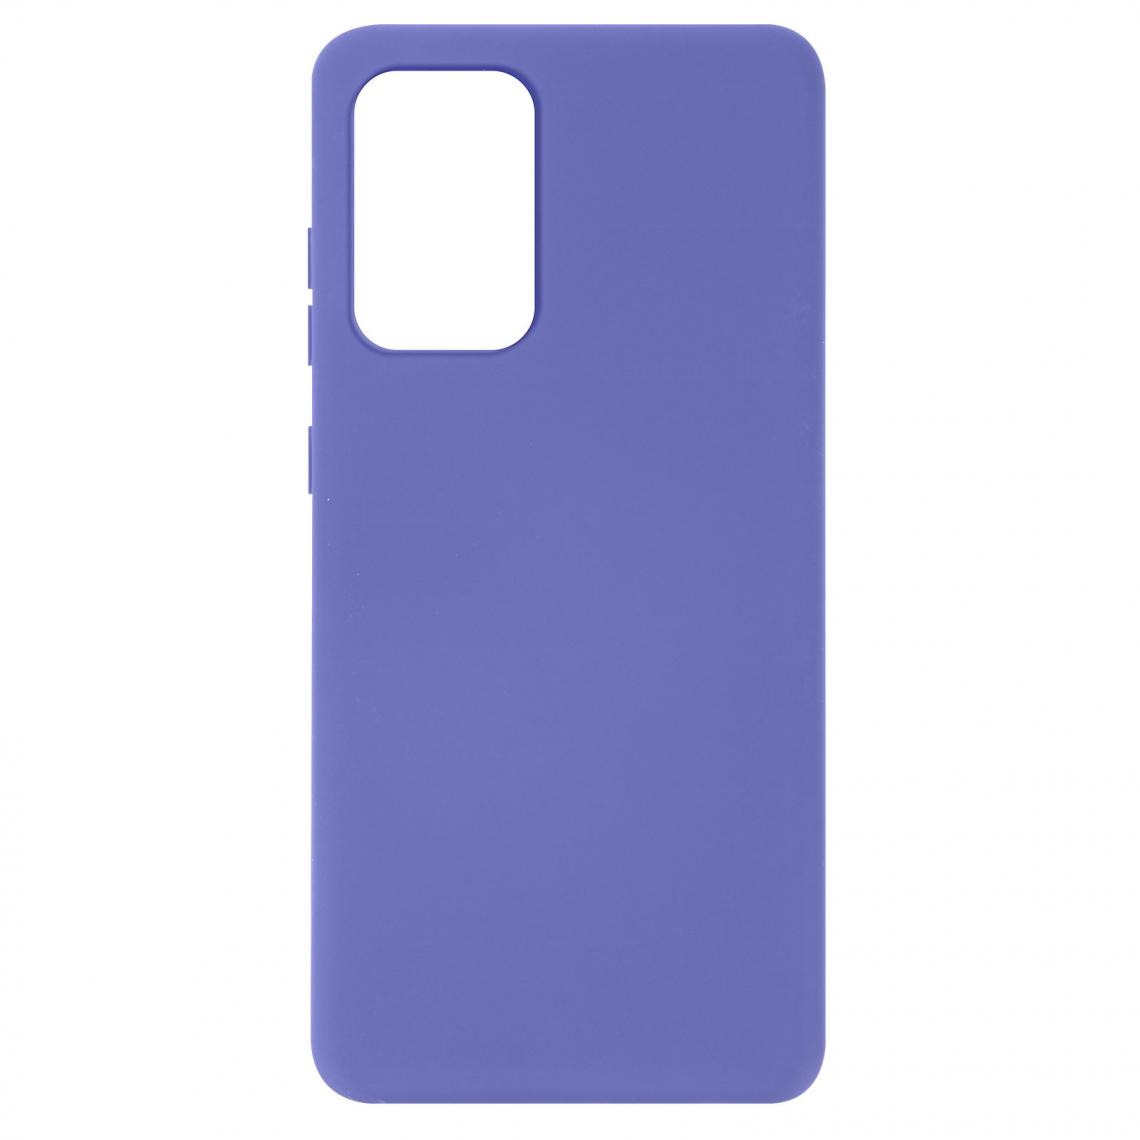 Avizar - Coque Samsung Galaxy A72 Silicone Semi-rigide Finition Soft Touch Fine Violet - Coque, étui smartphone